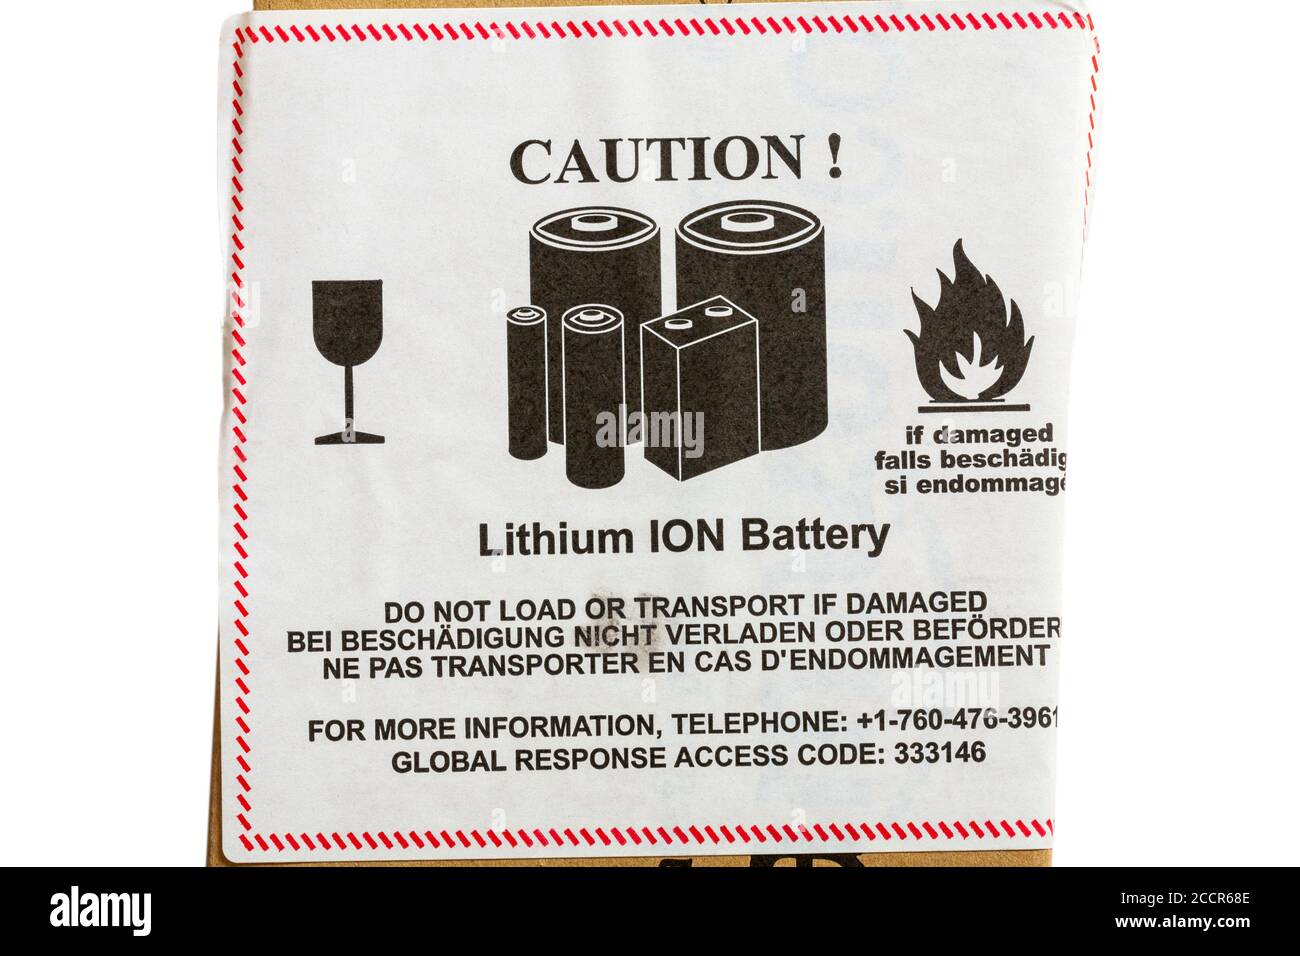 Achtung Lithium-IONEN-Batterie nicht laden oder transportieren, wenn  Beschädigter Aufkleber auf dem Paket Stockfotografie - Alamy